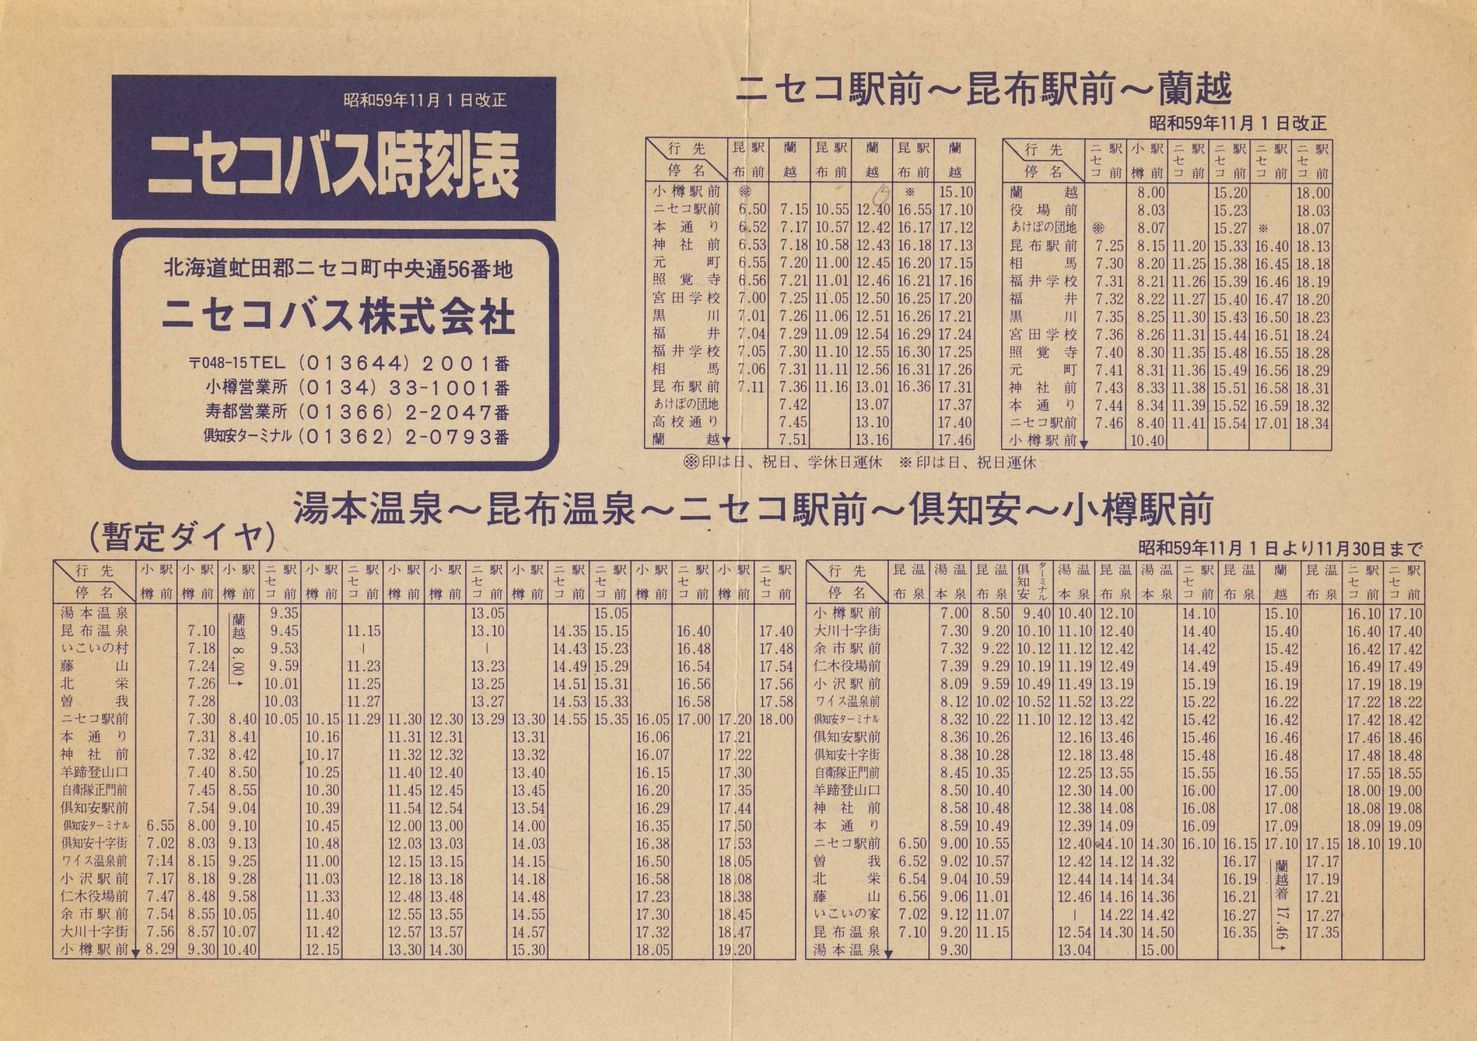 1984-11-01改正_ニセコバス_ニセコ線・昆布線時刻表